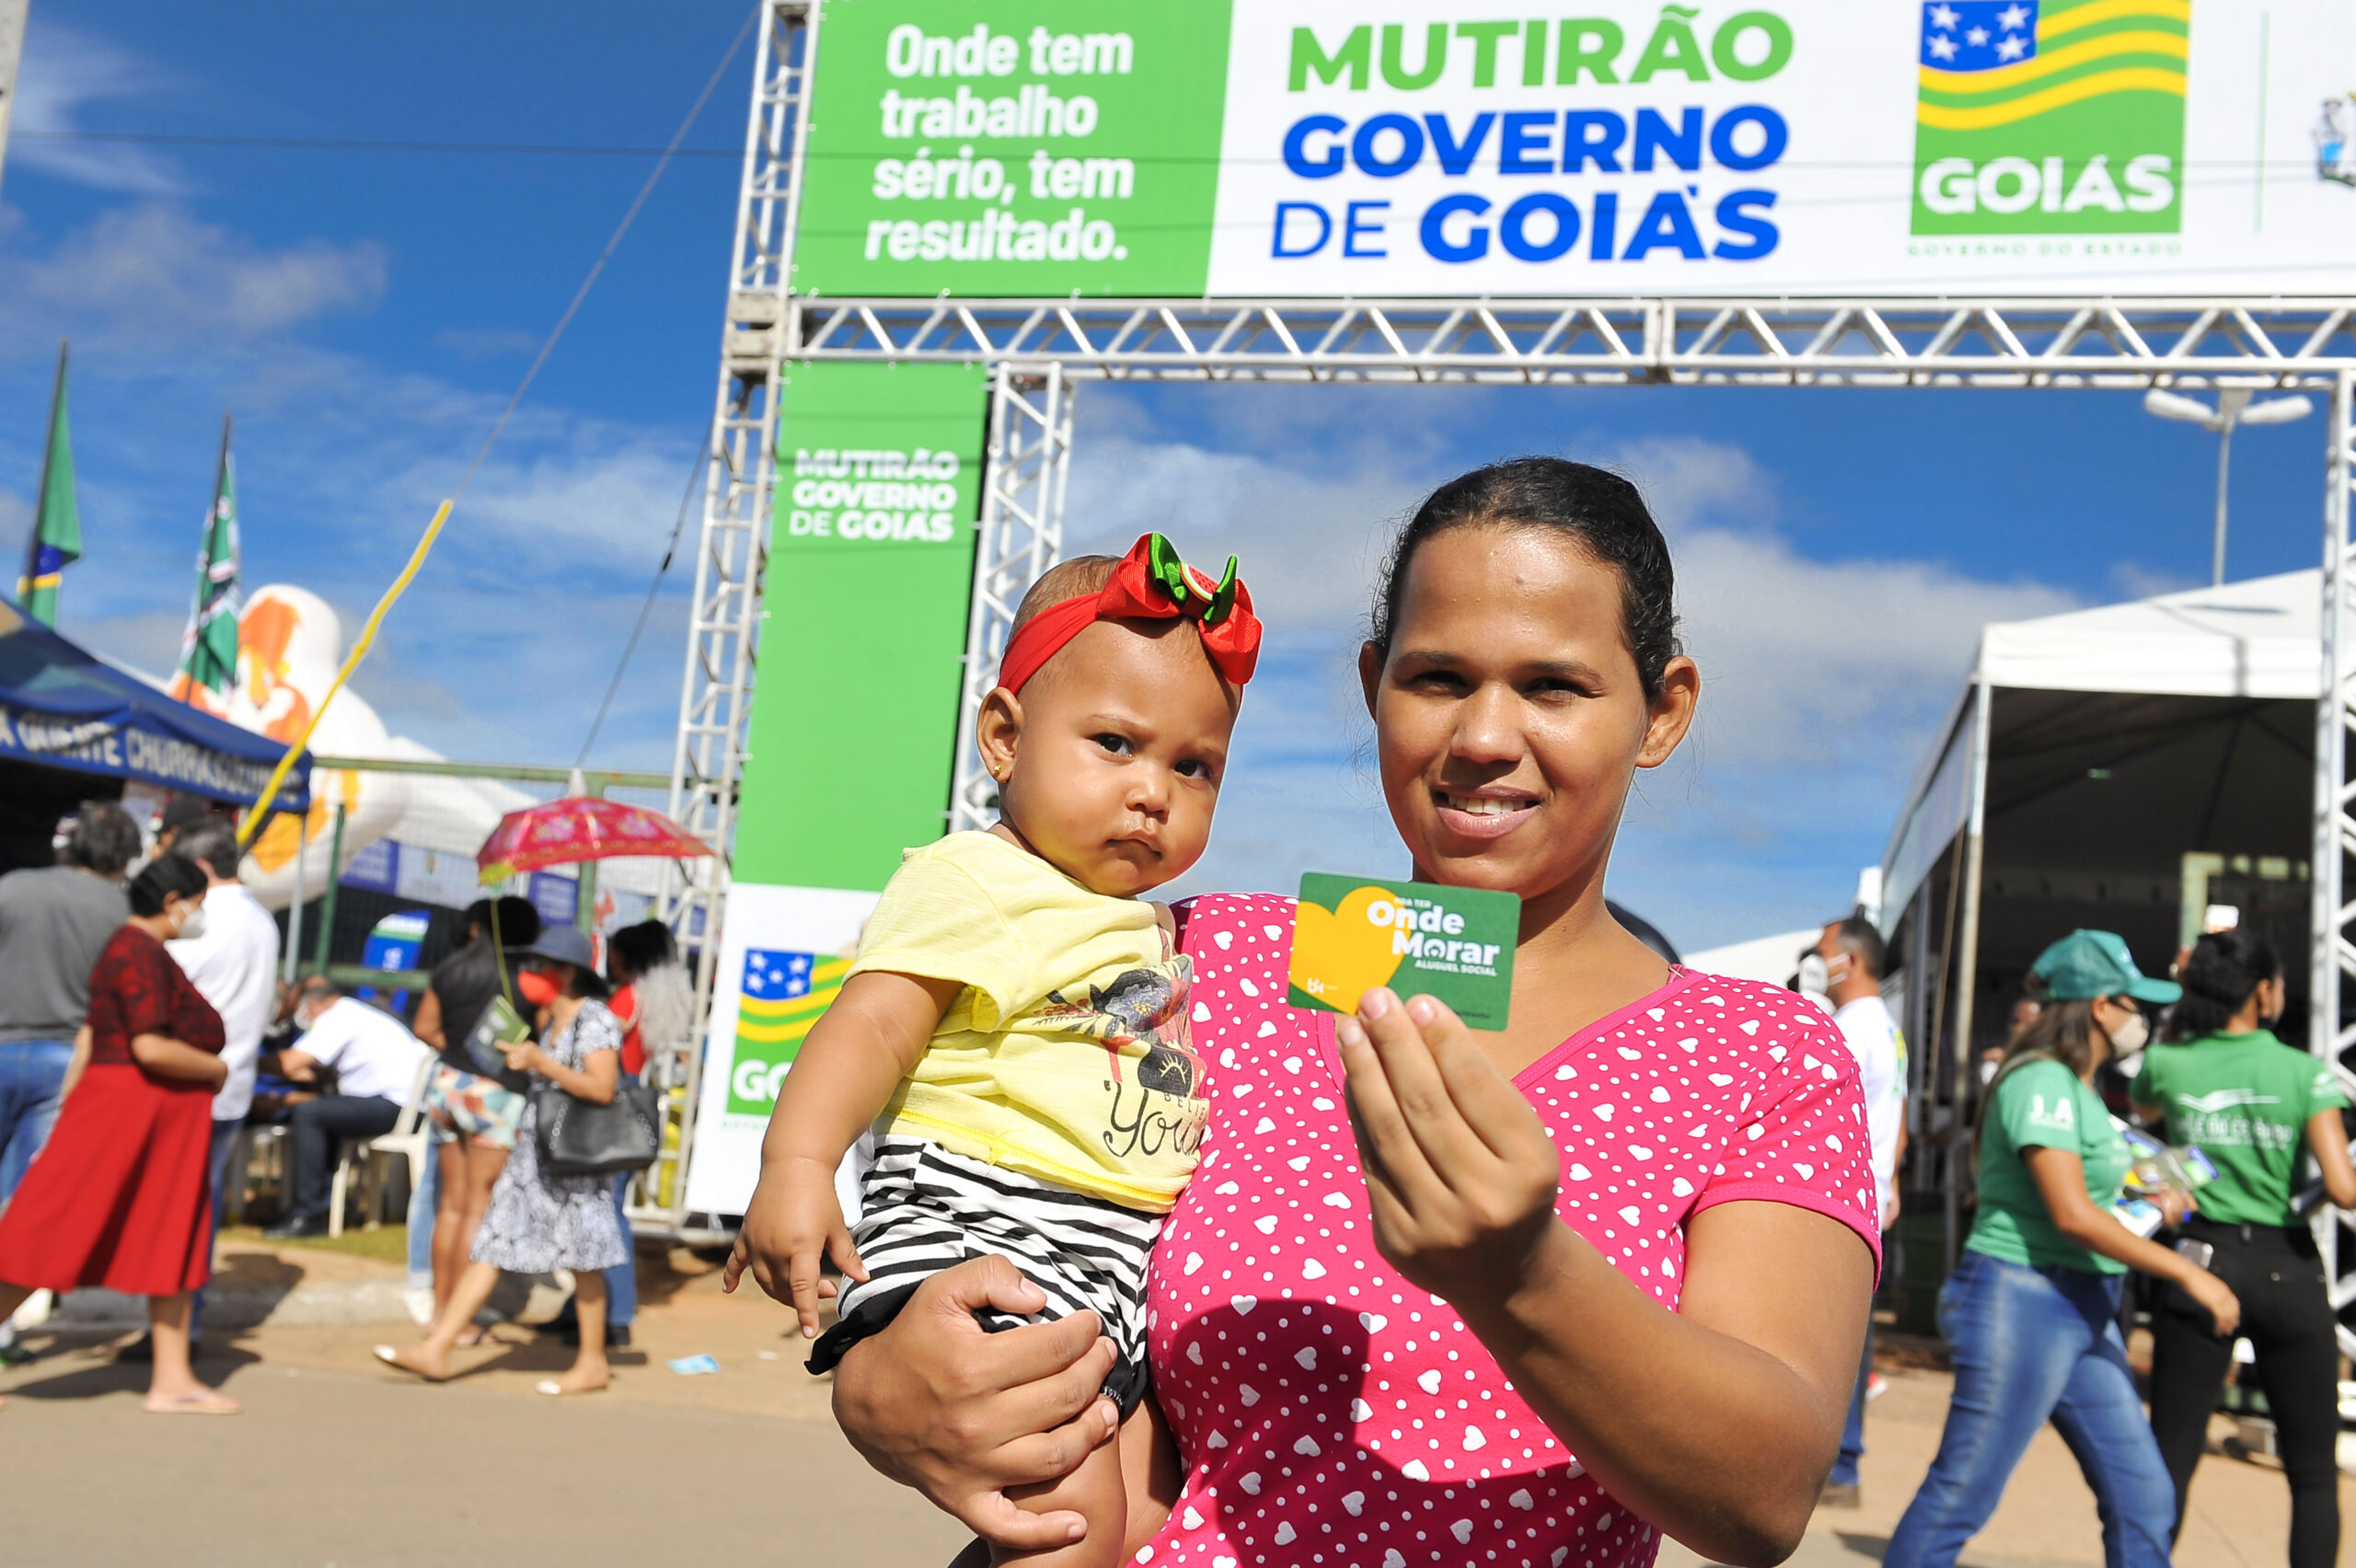 Governo de Goiás passa a atender mais cinco cidades com Aluguel Social